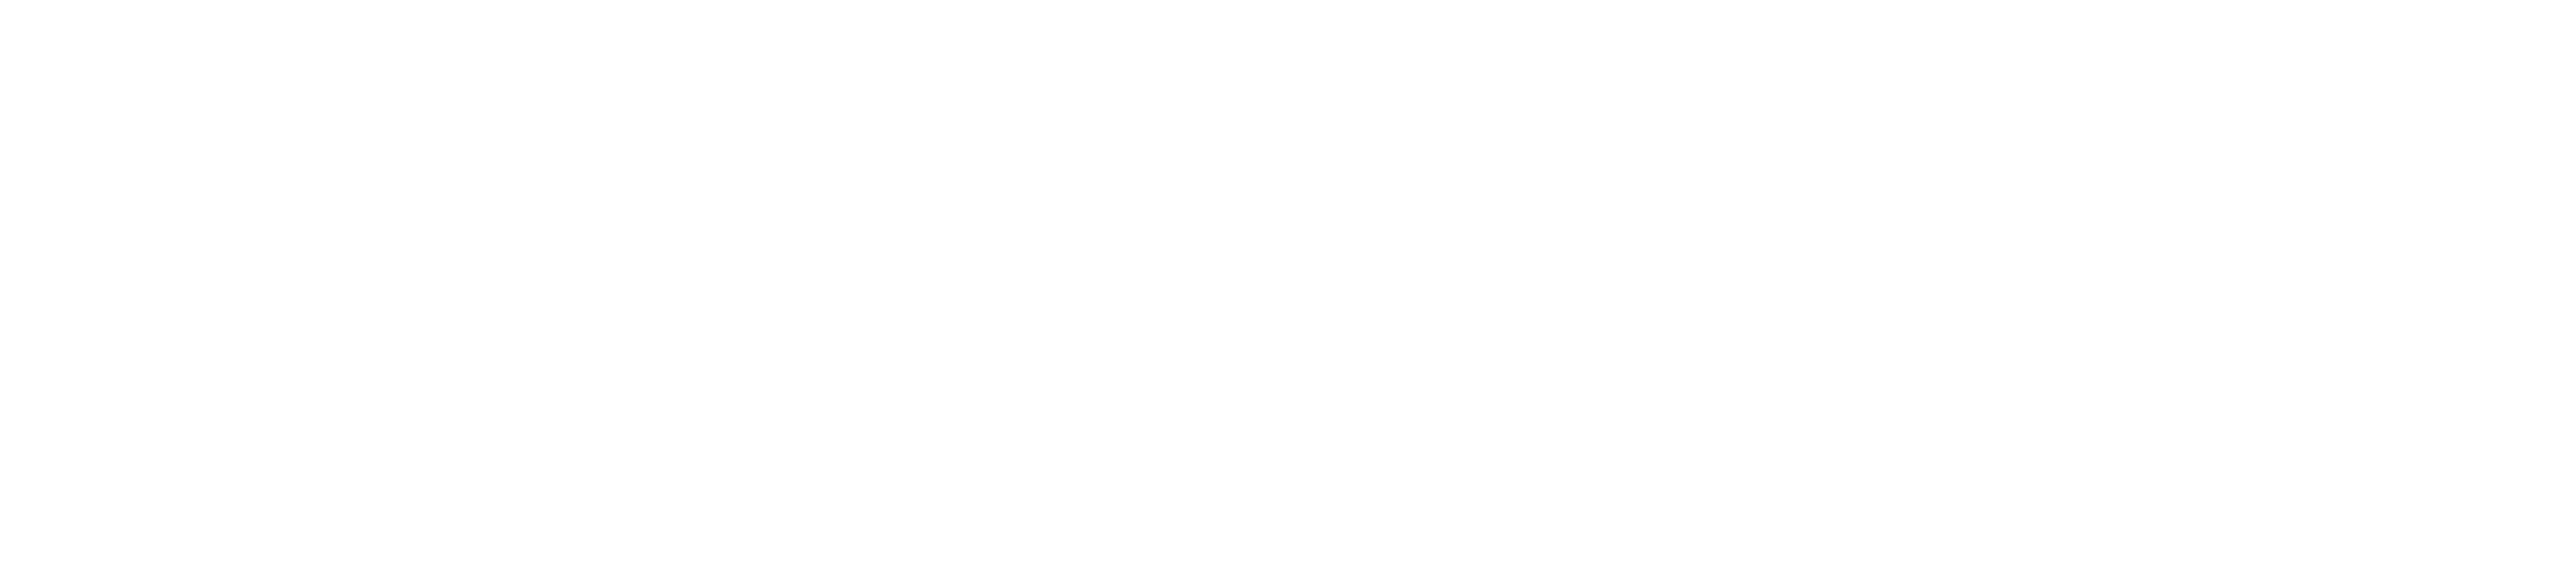 American Society of Hispanic Economists